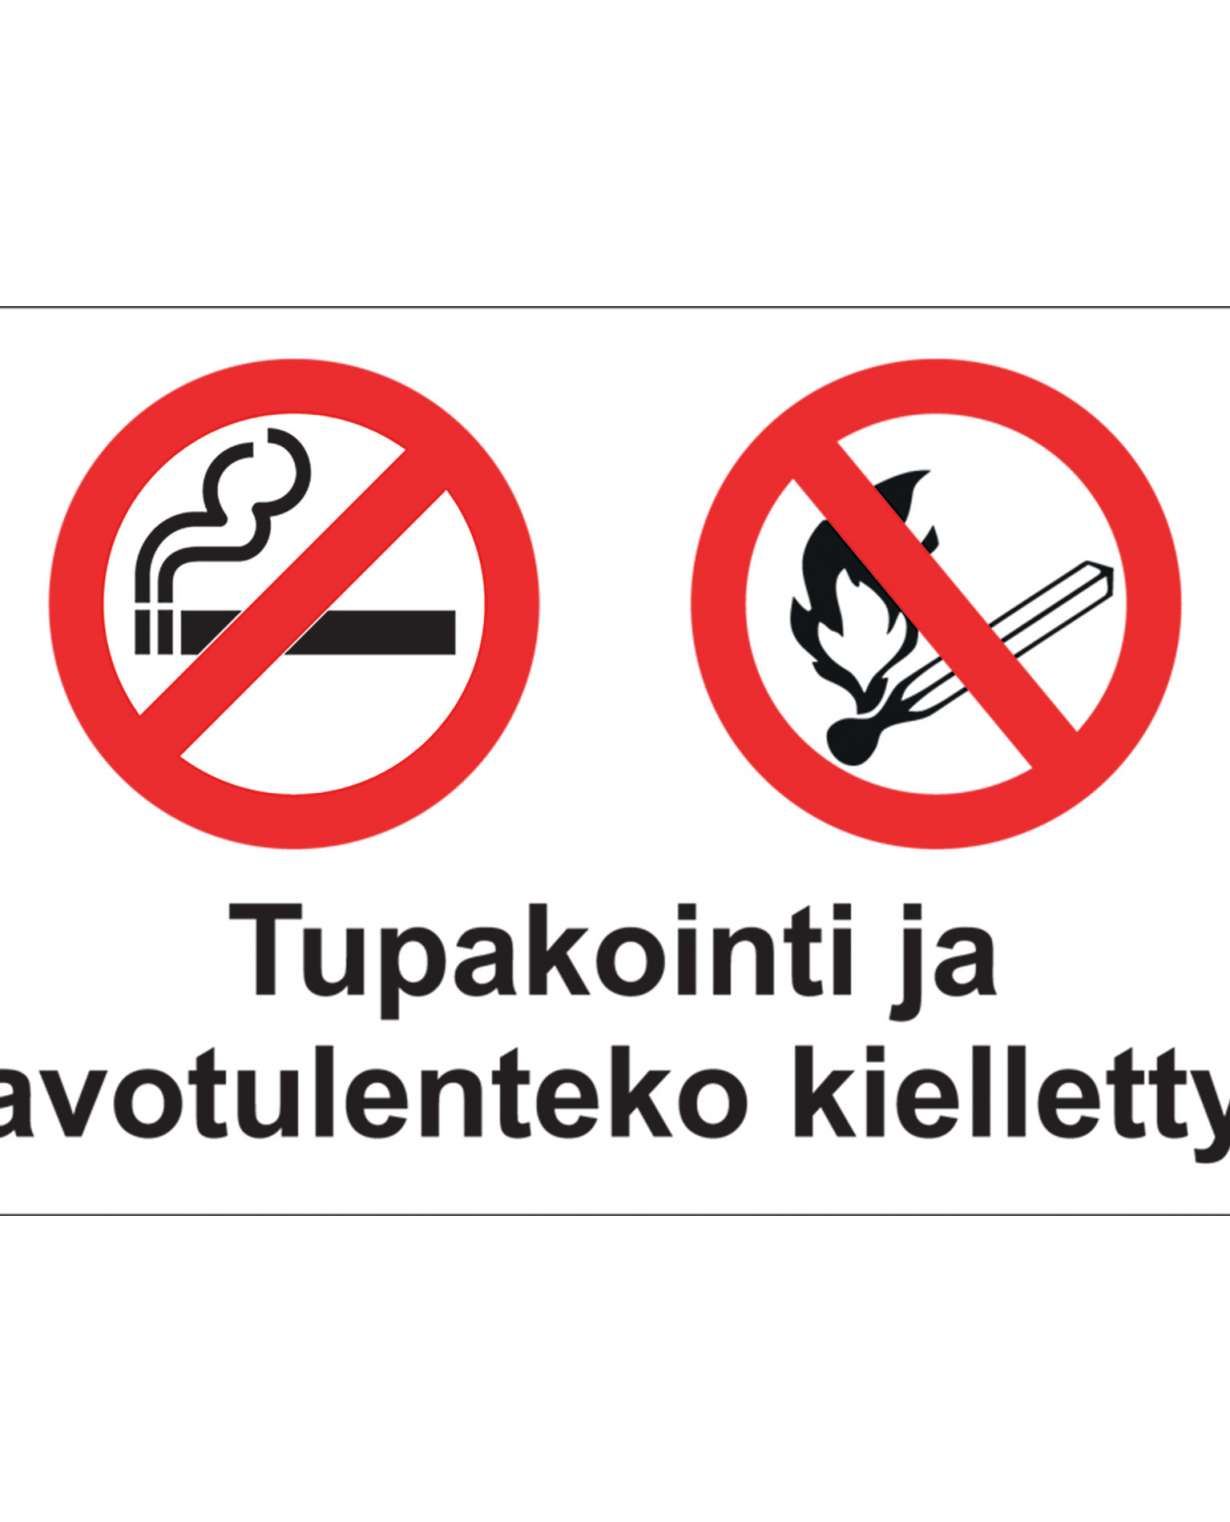 Tupakointi ja avotulen teko kielletty, Ibond alumiini, 400x300 mm